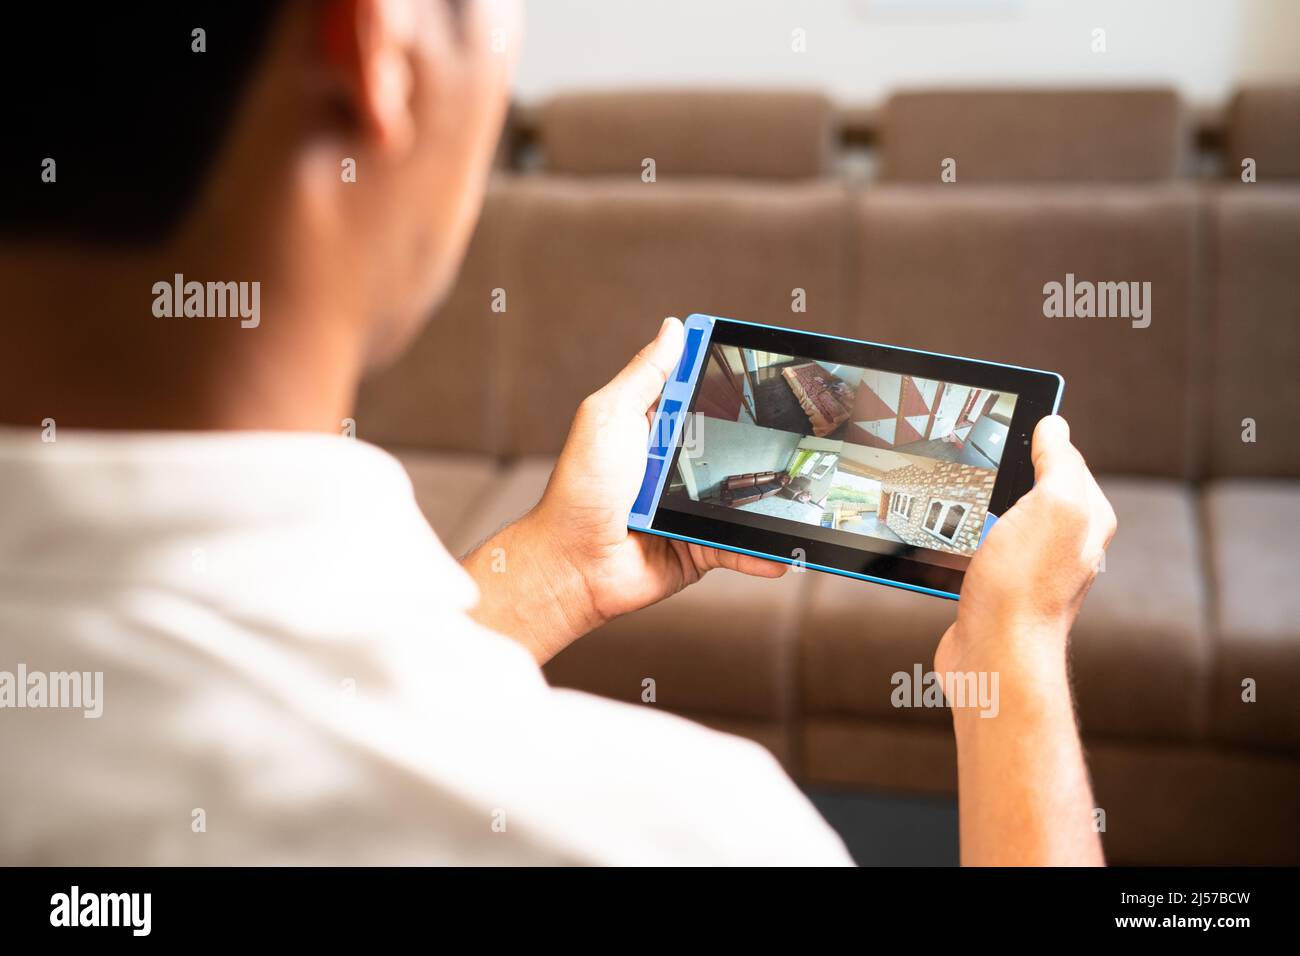 La spalla del proprietario di casa controlla le riprese della telecamera tvcc su tablet digitale intelligente a casa - concetto di sicurezza, tecnologia e sorveglianza. Foto Stock